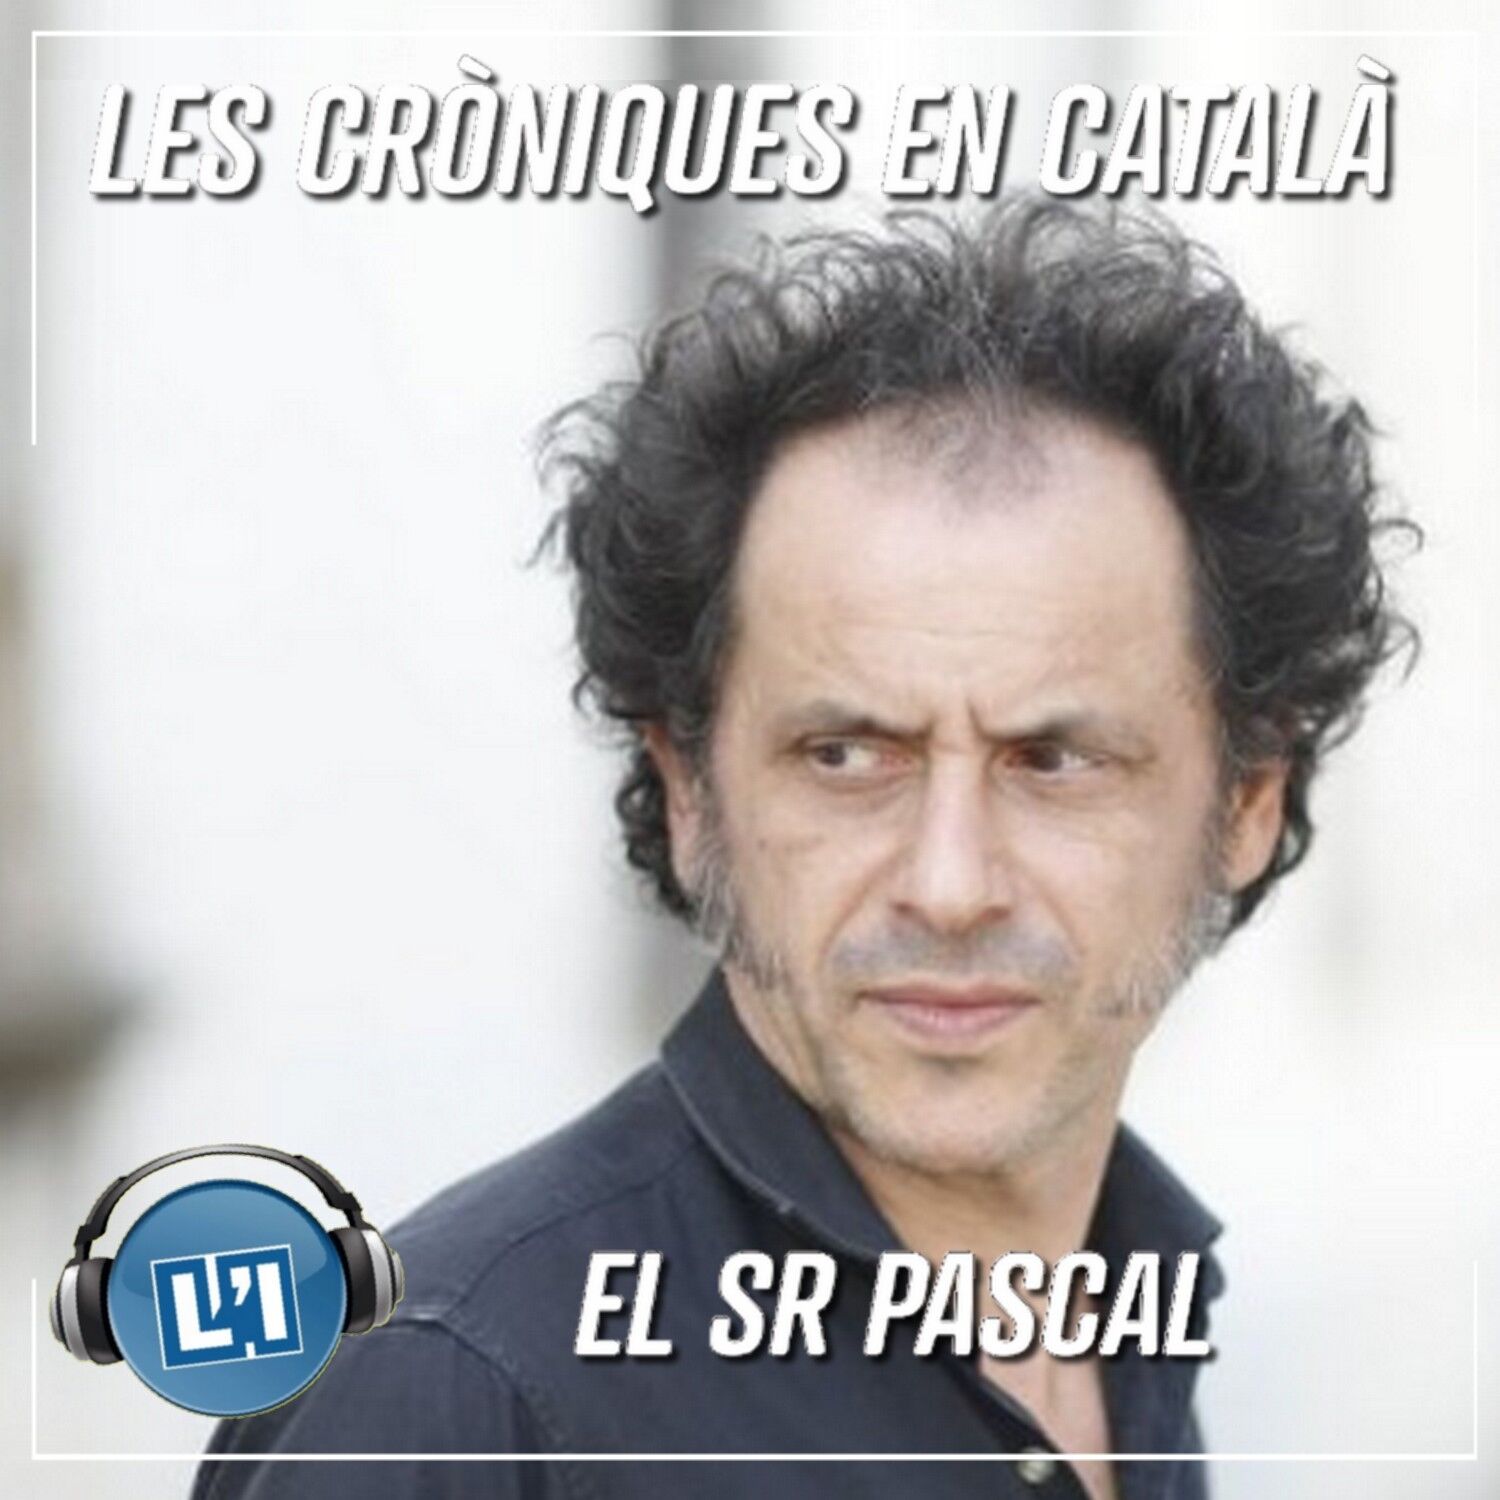 El Sr. Pascal.